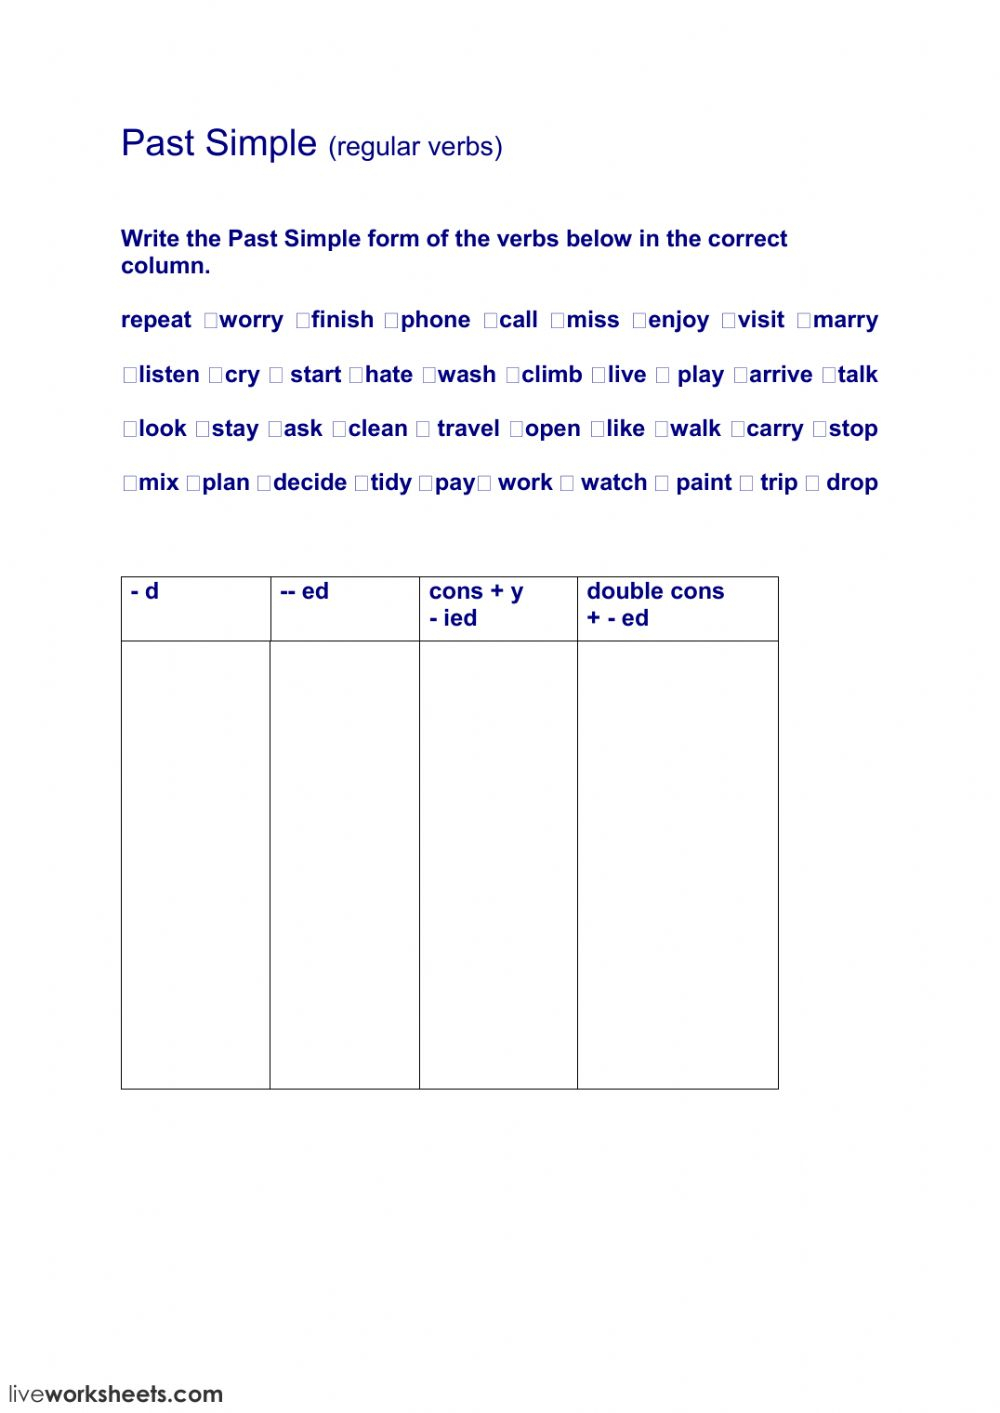 Regular Verbs Past Simple Worksheet